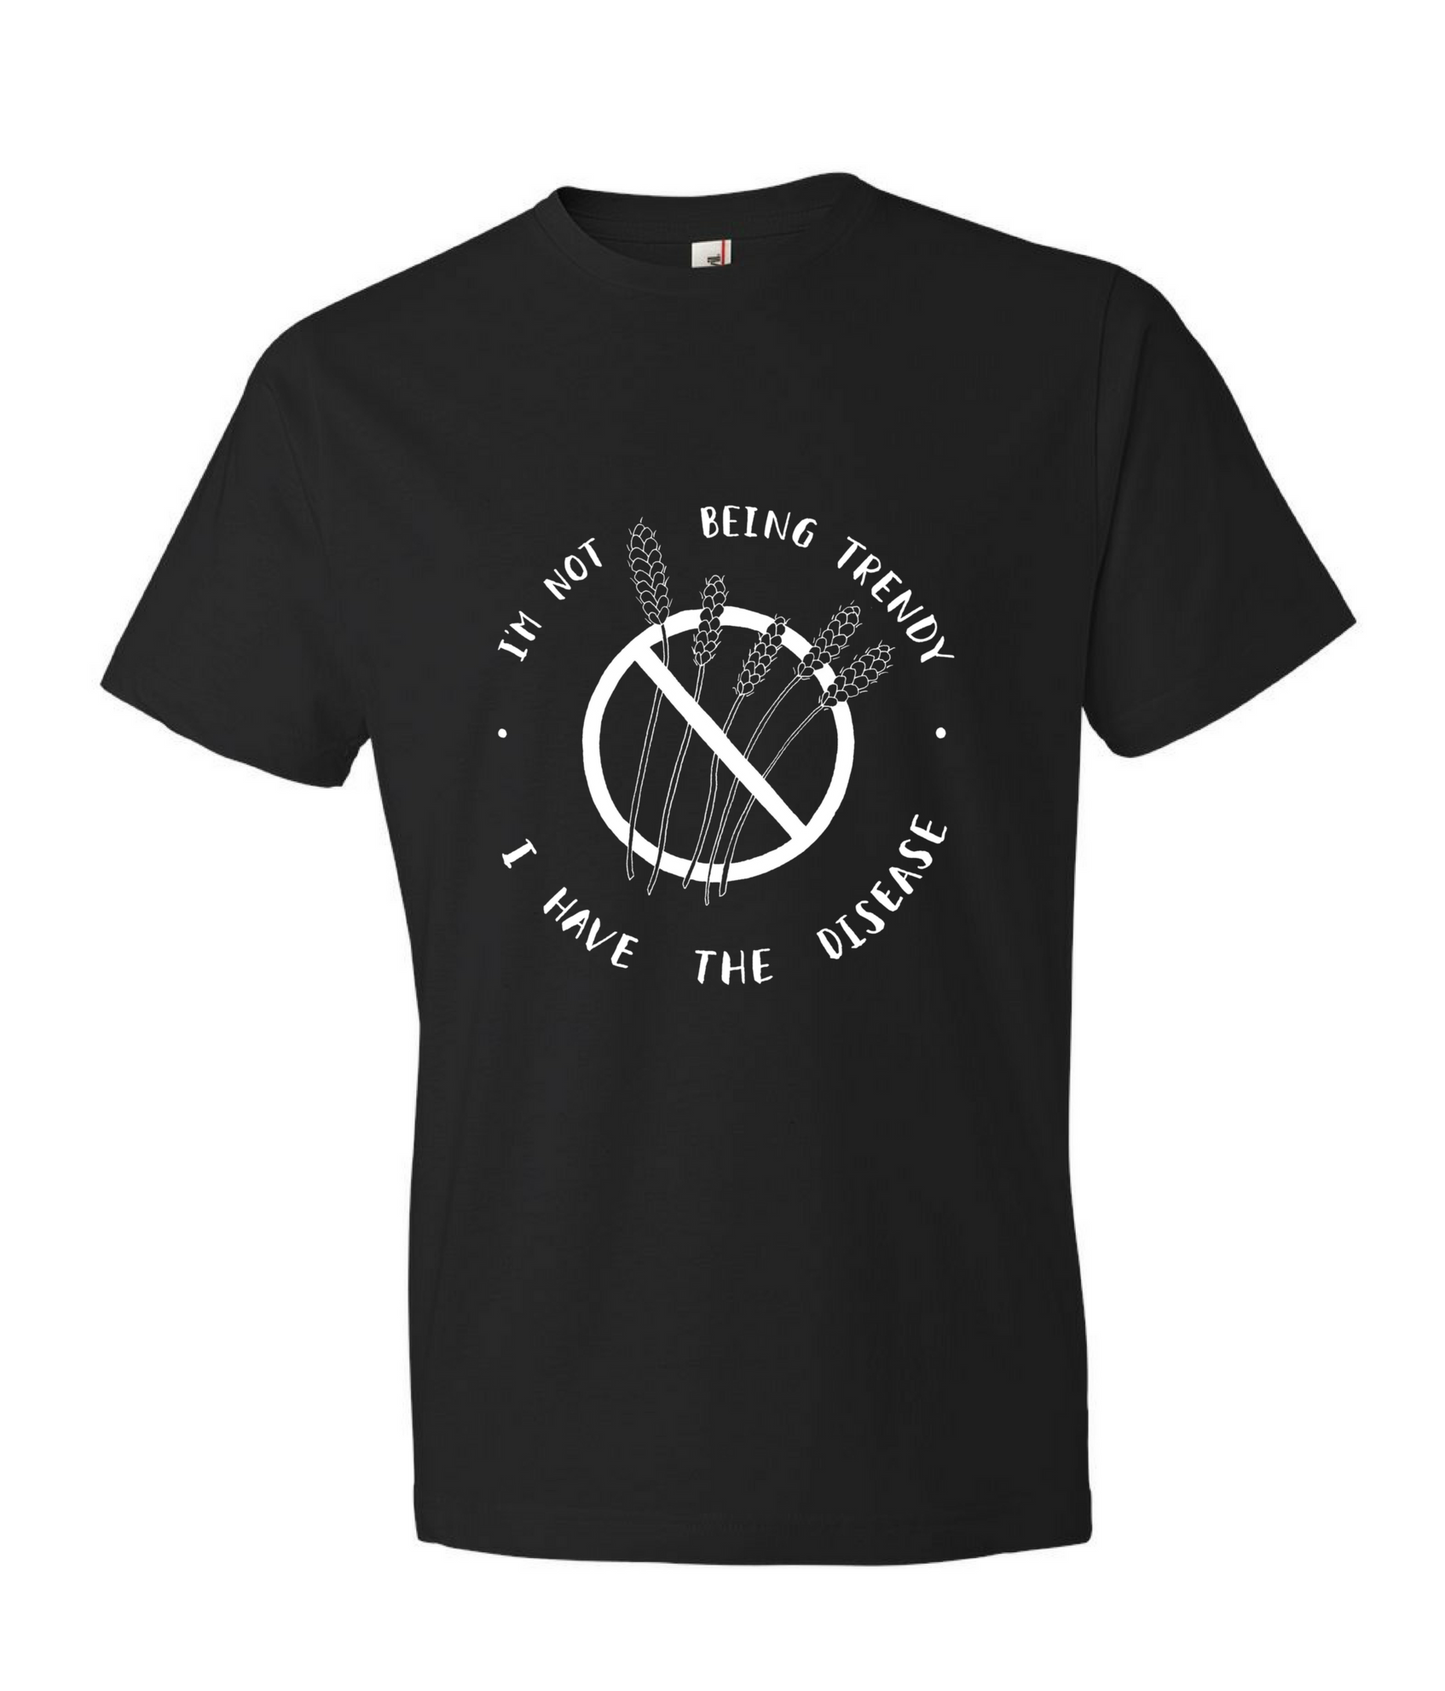 "I'm Not Being Trendy" - Men's Black T-shirt for Celiacs